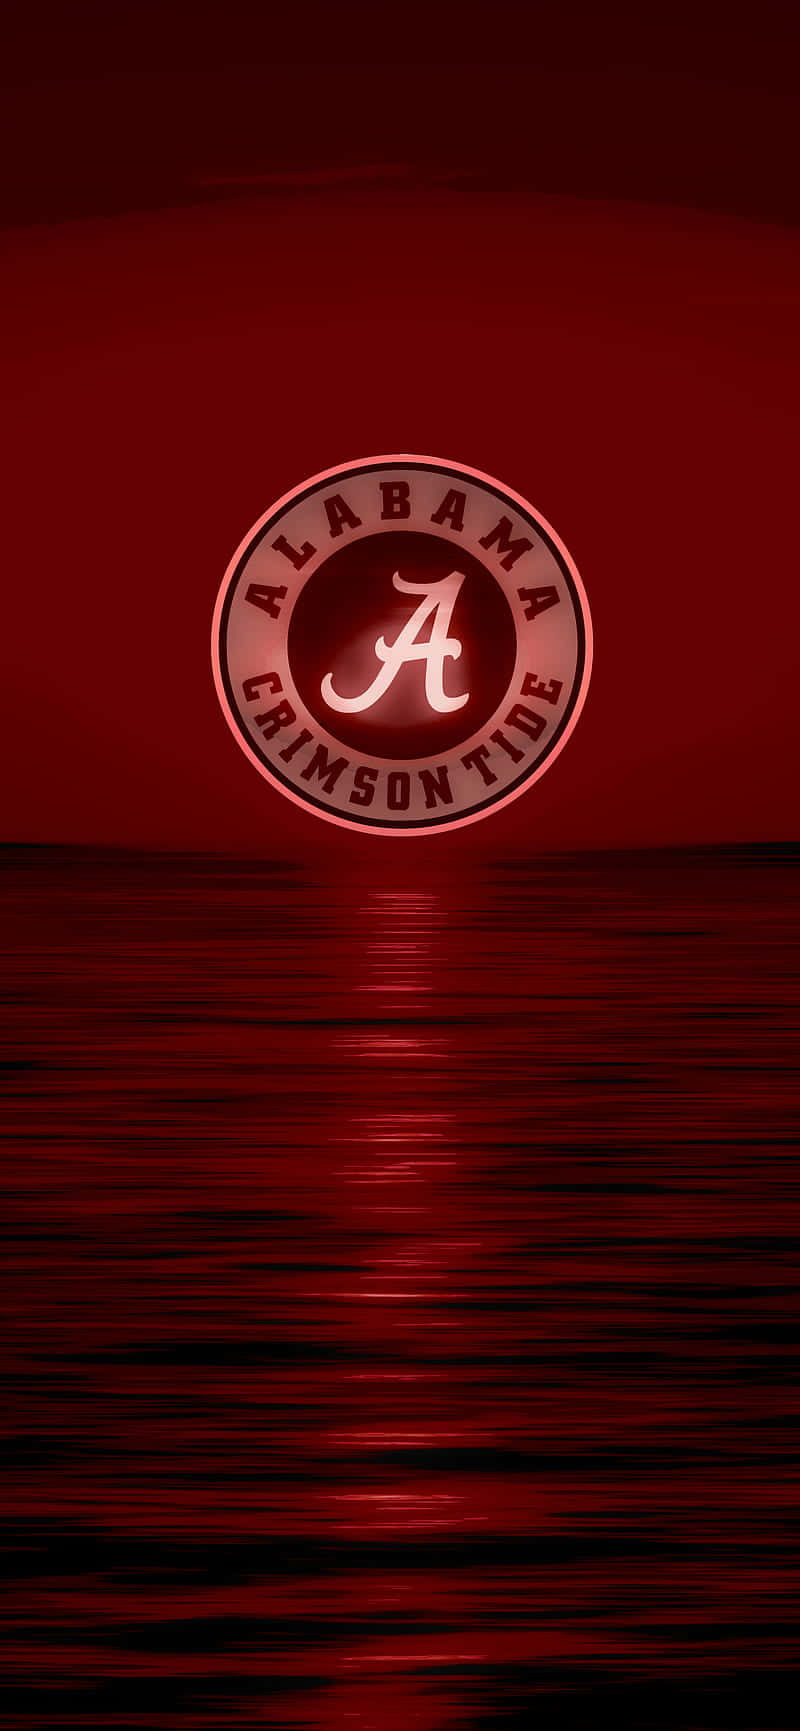 Zeigensie Ihre Unterstützung Für Alabama Football Mit Diesem Hellen Und Lebendigen Iphone Hintergrundbild Wallpaper